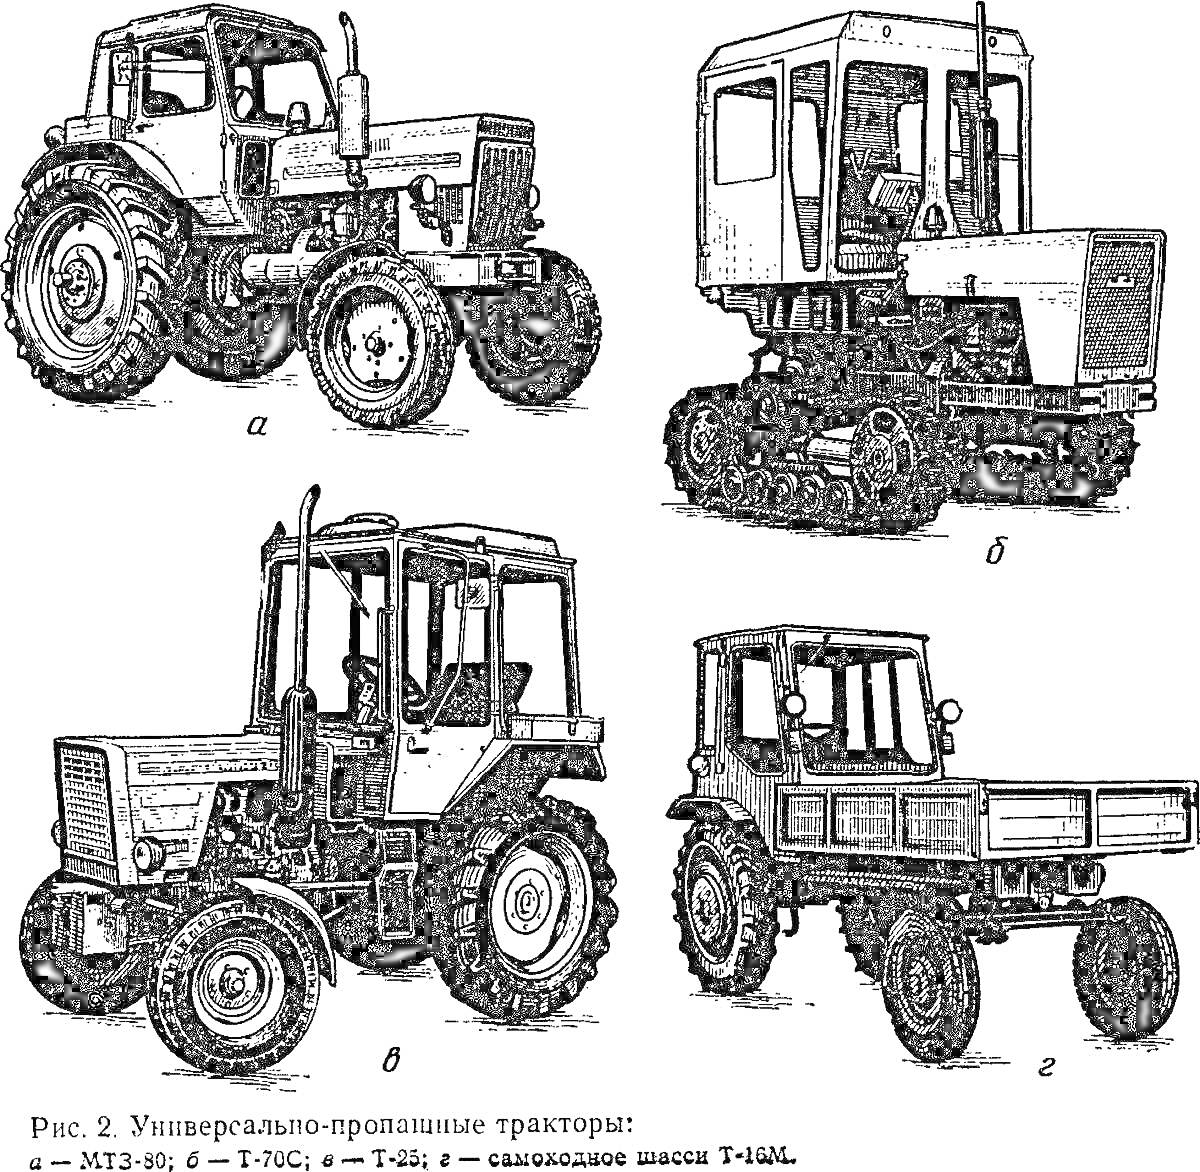 Раскраска Универсально-пропашные тракторы: МТЗ-82, Р-714С, Т-40А, самоходное шасси Т-16М